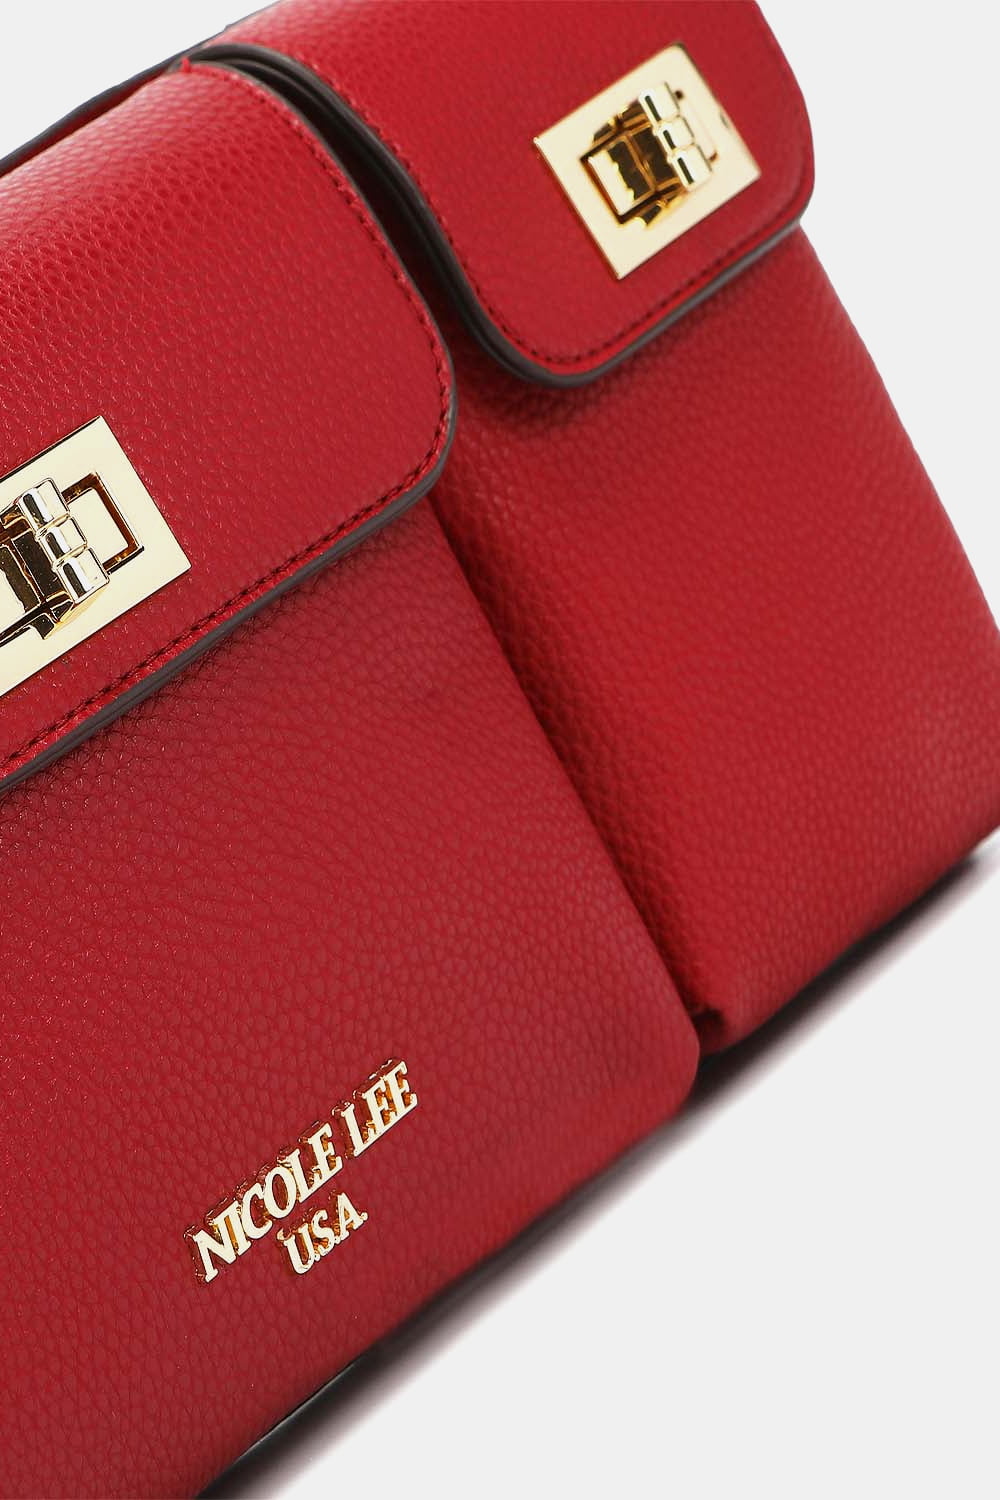 Nicole Lee USA Multi-Pocket Vegan Leather Fanny Packs